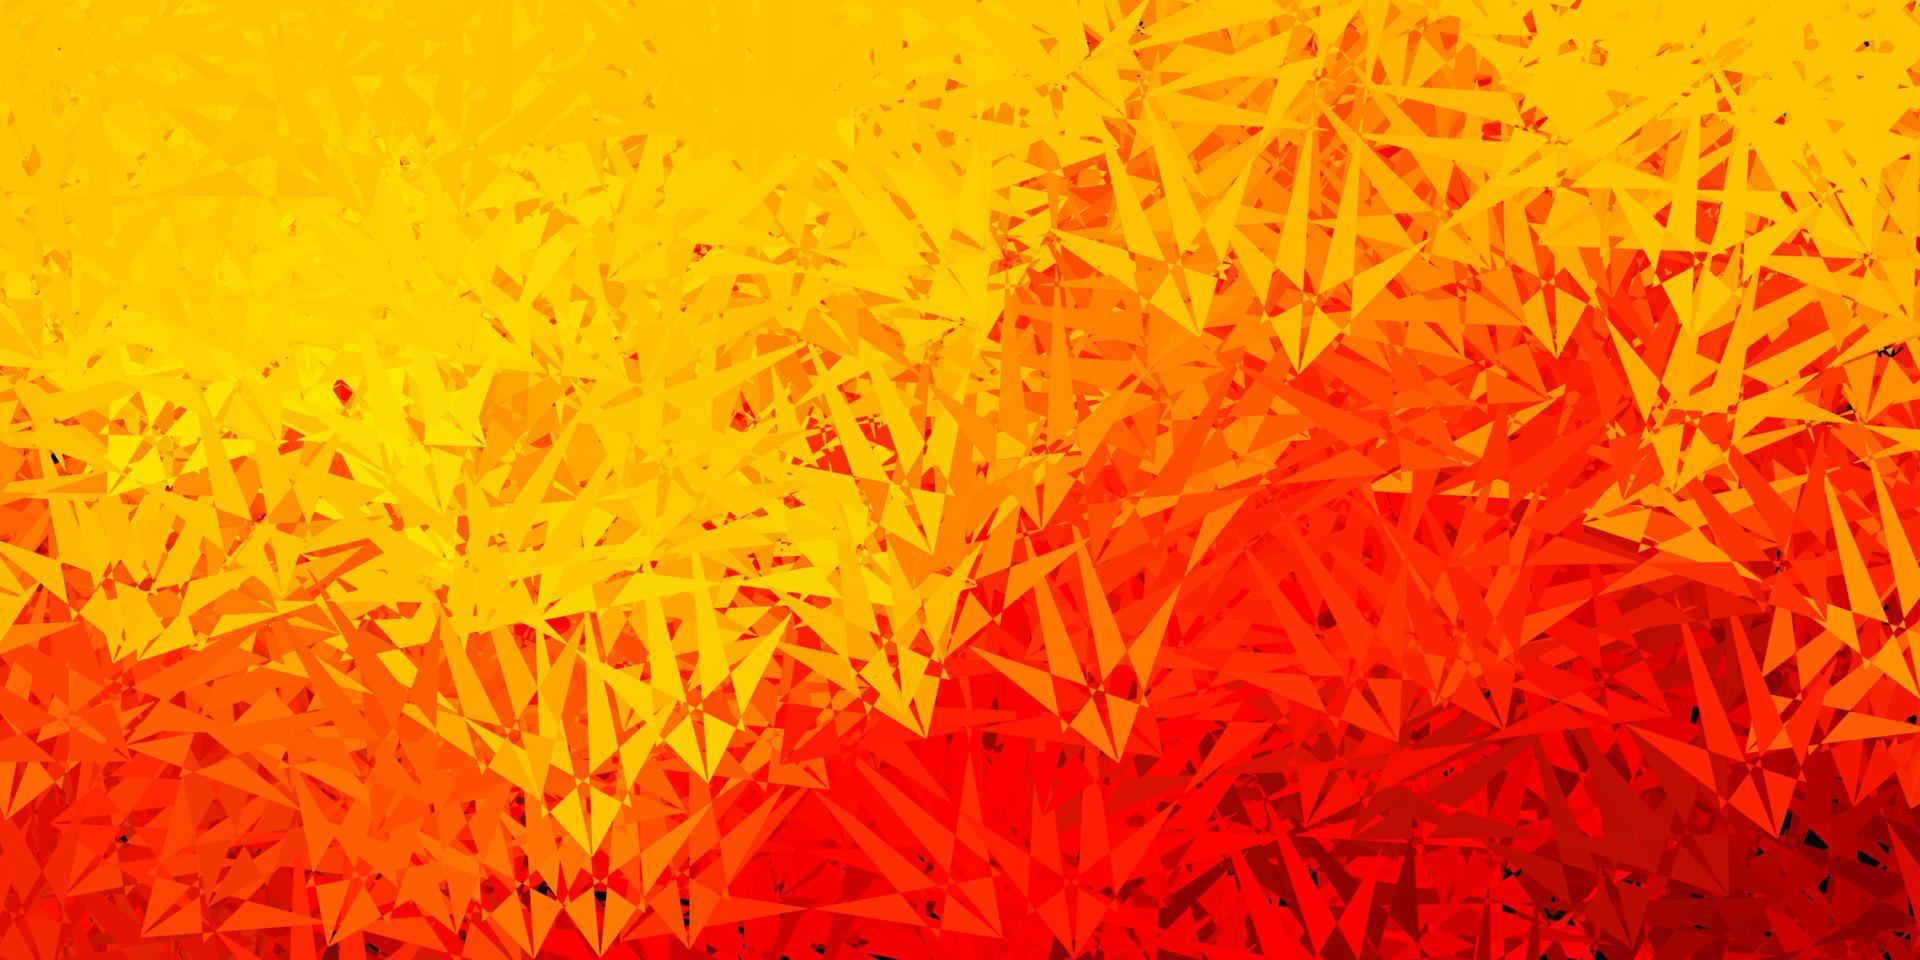 texture vectorielle rouge foncé et jaune avec des triangles aléatoires. vecteur